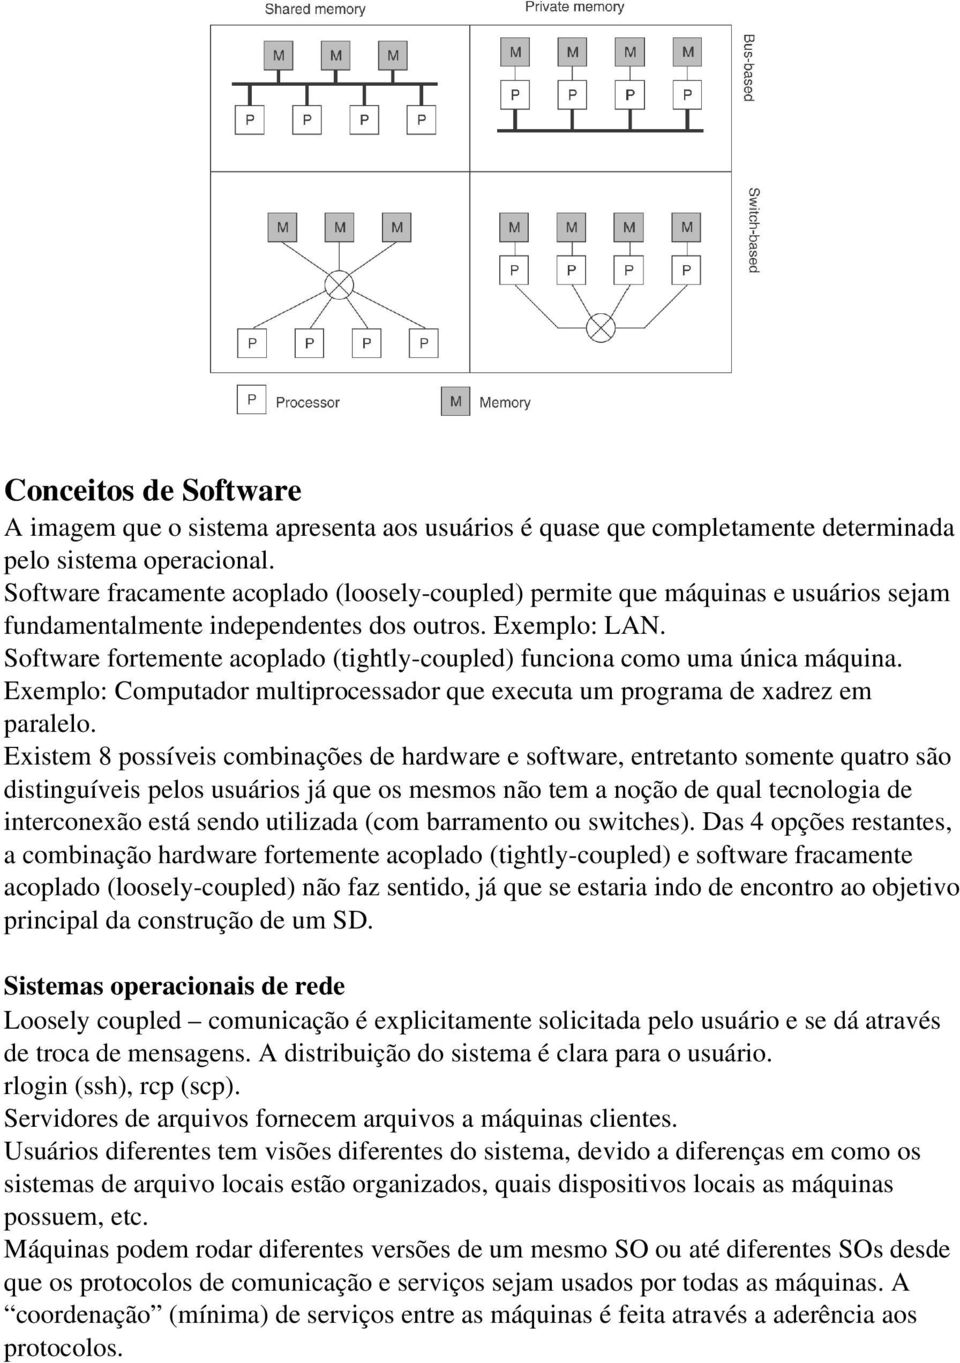 Software fortemente acoplado (tightly-coupled) funciona como uma única máquina. Exemplo: Computador multiprocessador que executa um programa de xadrez em paralelo.